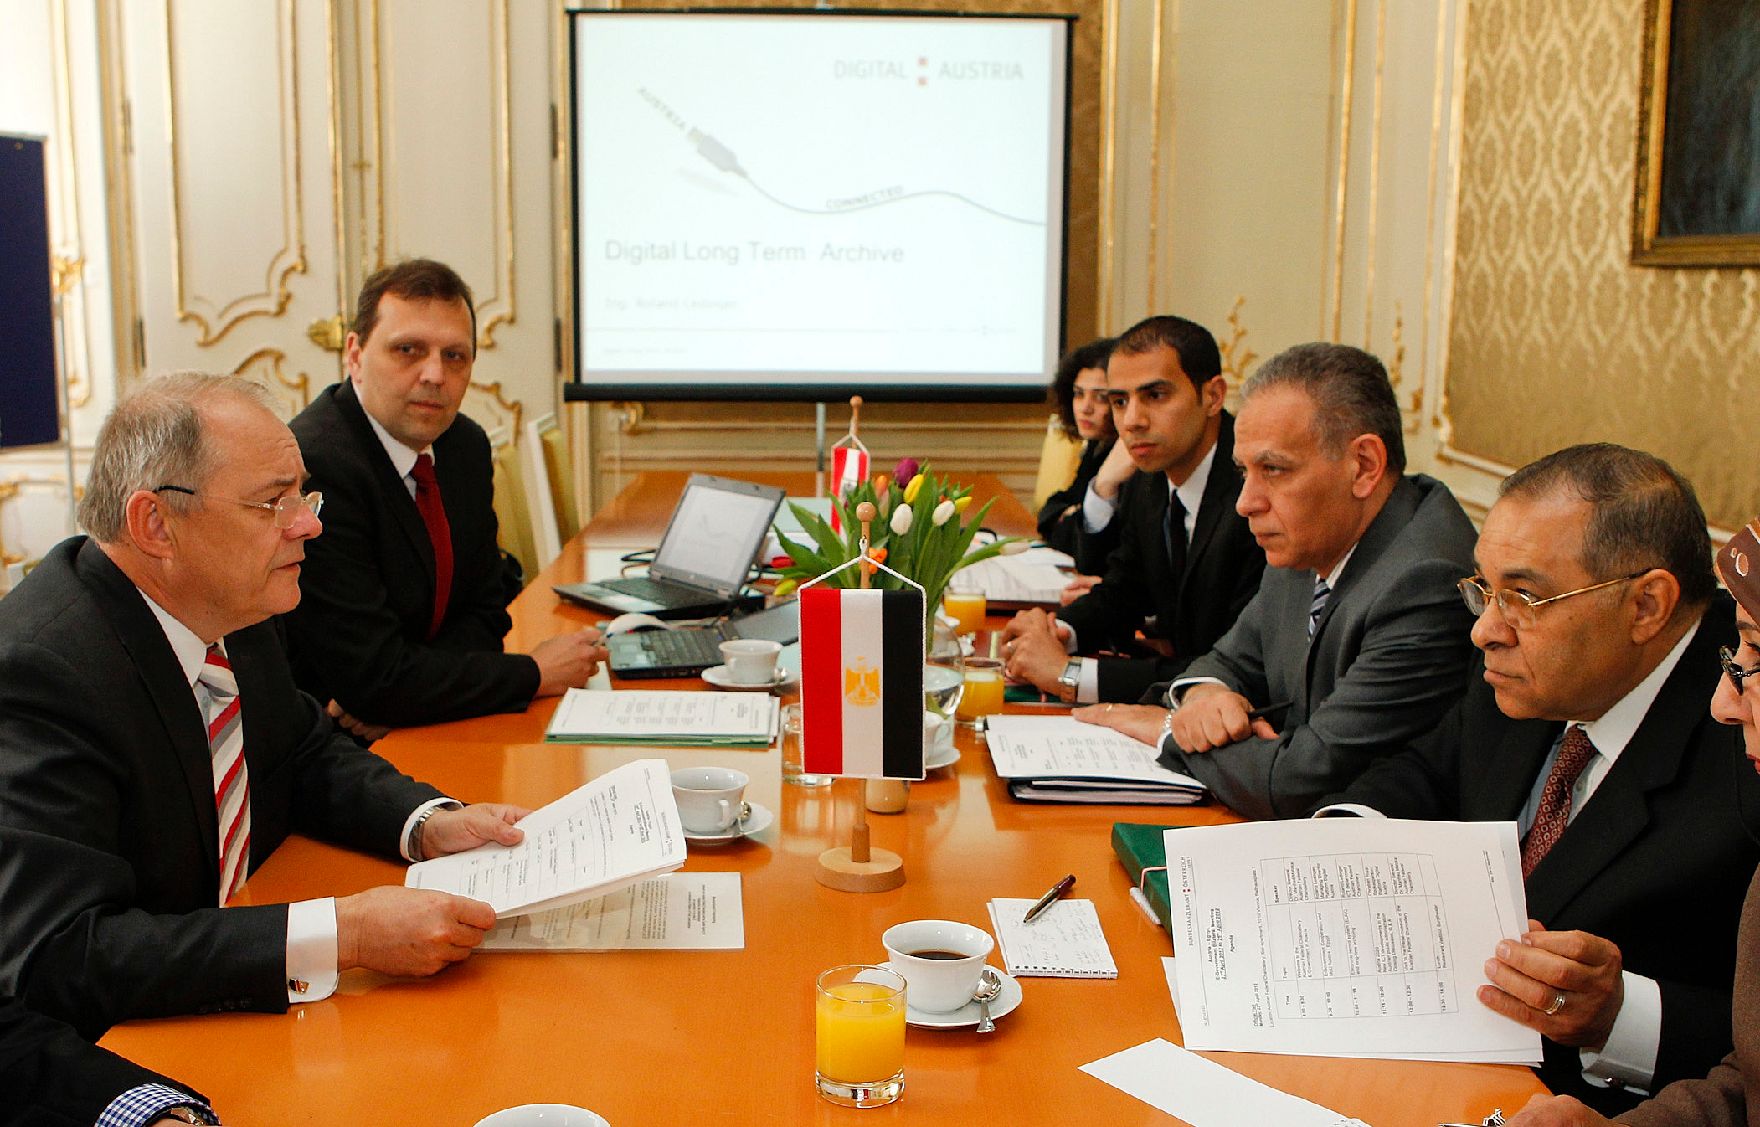 Am 23. April 2012 empfing Sektionschef Manfred Matzka (l.) den ägyptischen Minister Safwat El Nahas (r.) zu einem Gespräch im Bundeskanzleramt.